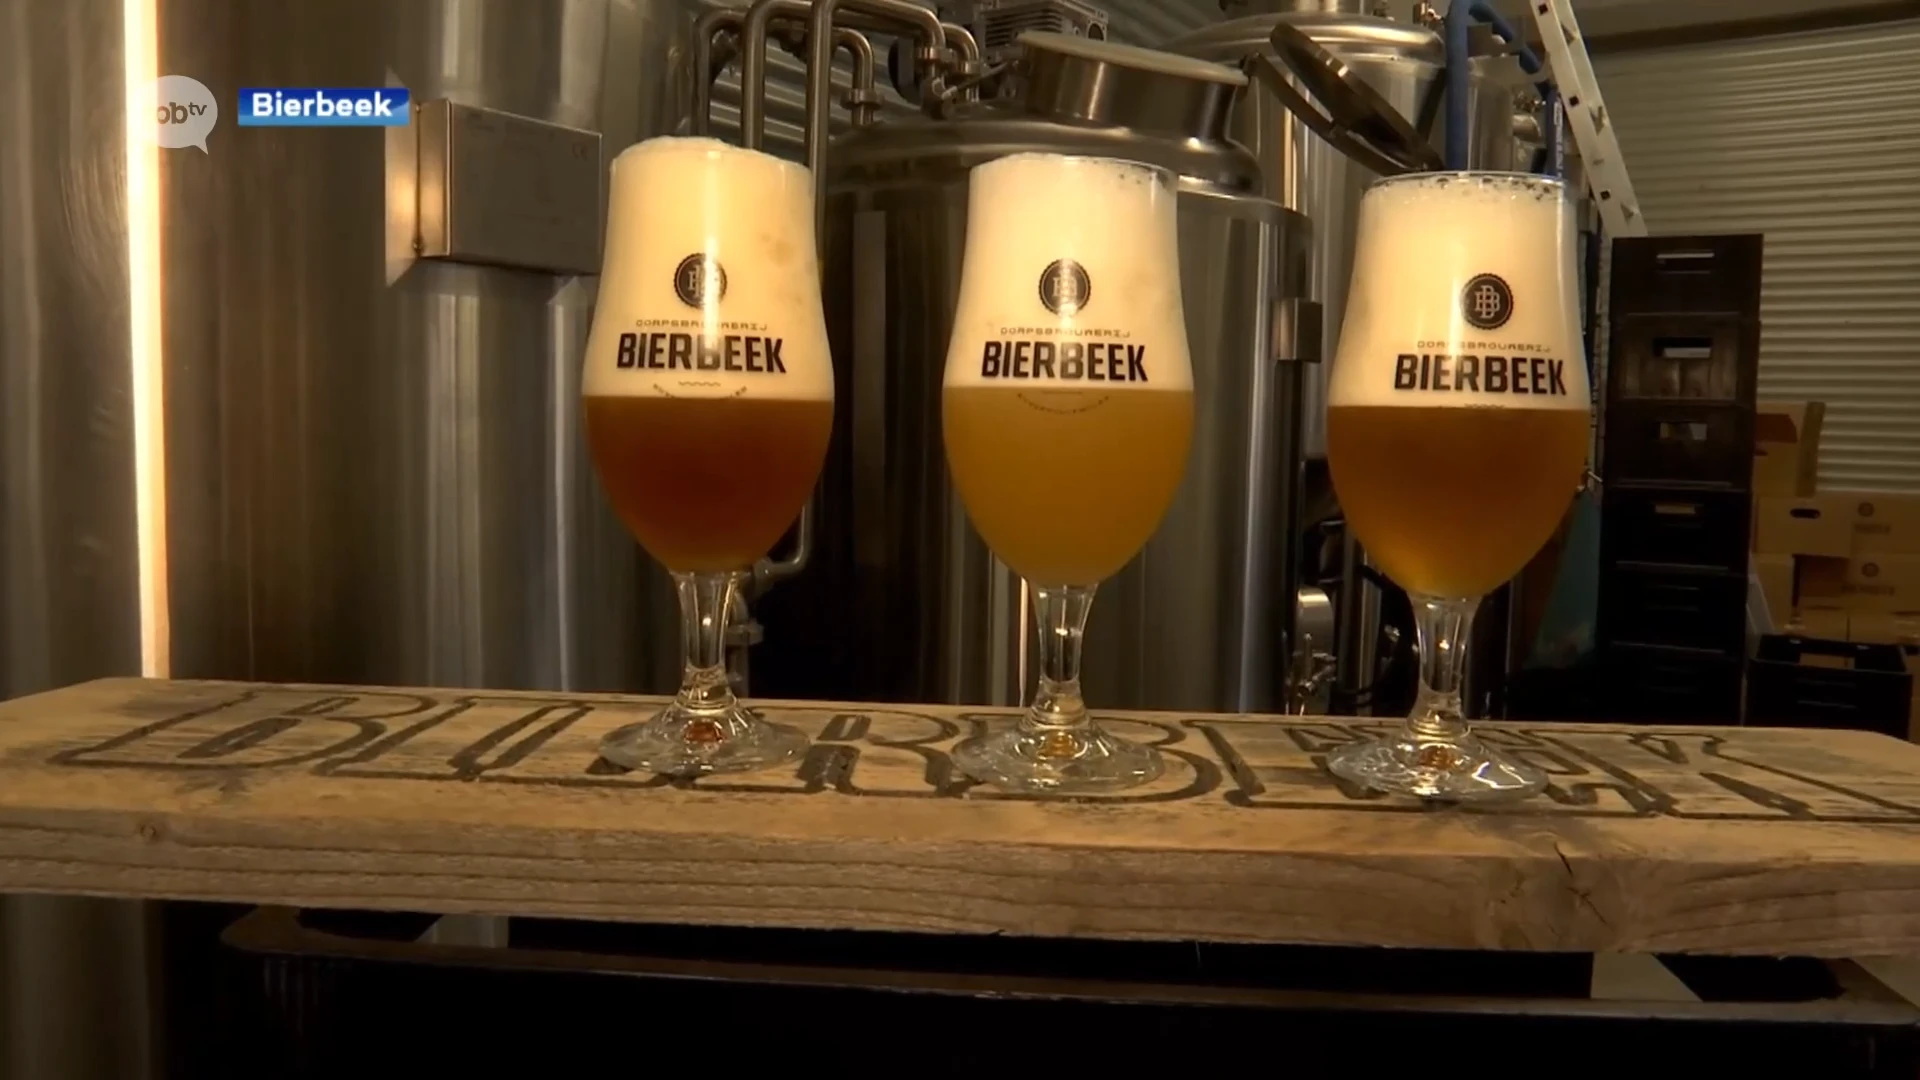 Dorpsbrouwerij Bierbeek breidt assortiment uit, inwoners mogen smaak zelf kiezen